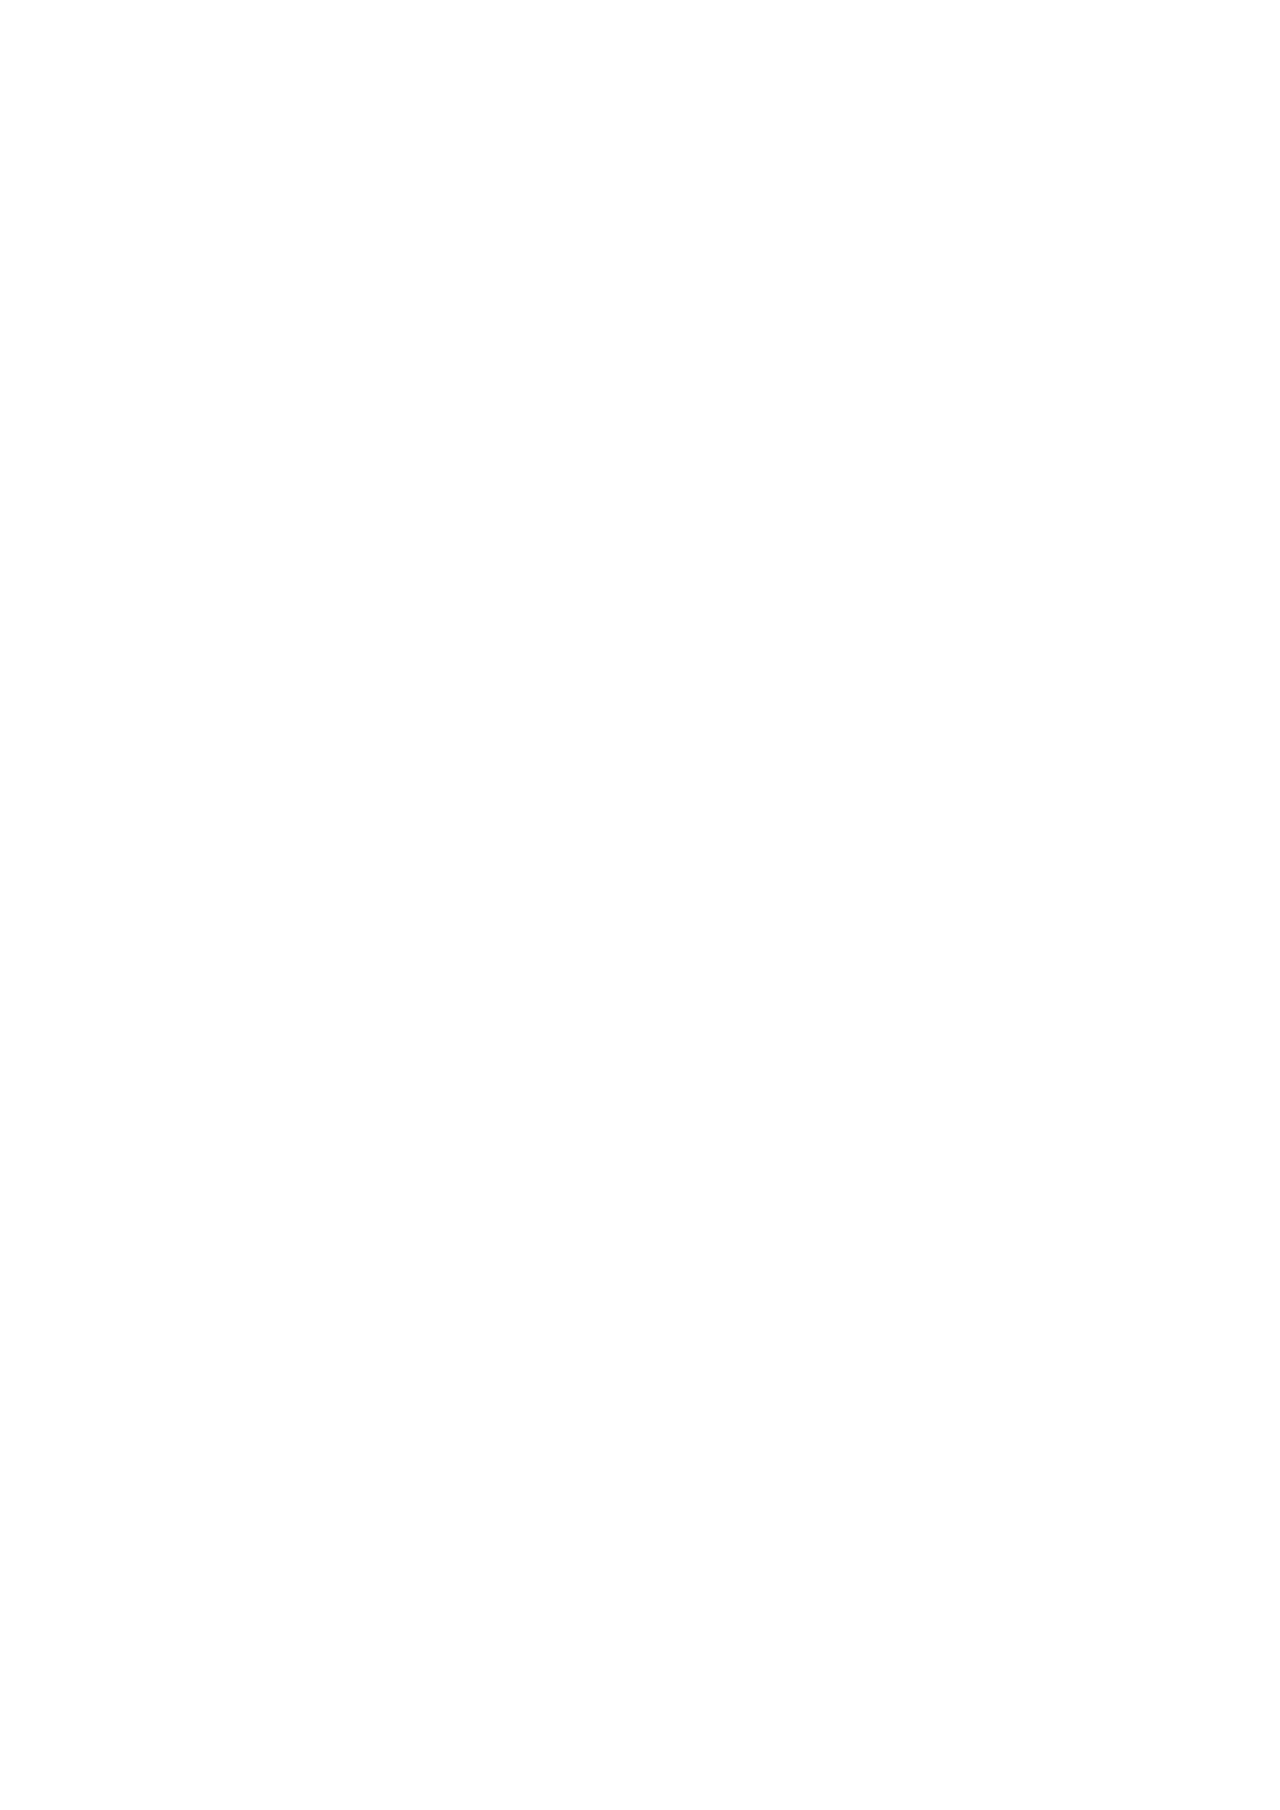 [きのこのみ (konomi)] ニャンコロジ13 -猫田さんと宇佐美さんのヒミツの接触- 番外編同時収録「宇佐美さんと海辺で秘密のえっち？」[DL版] 2